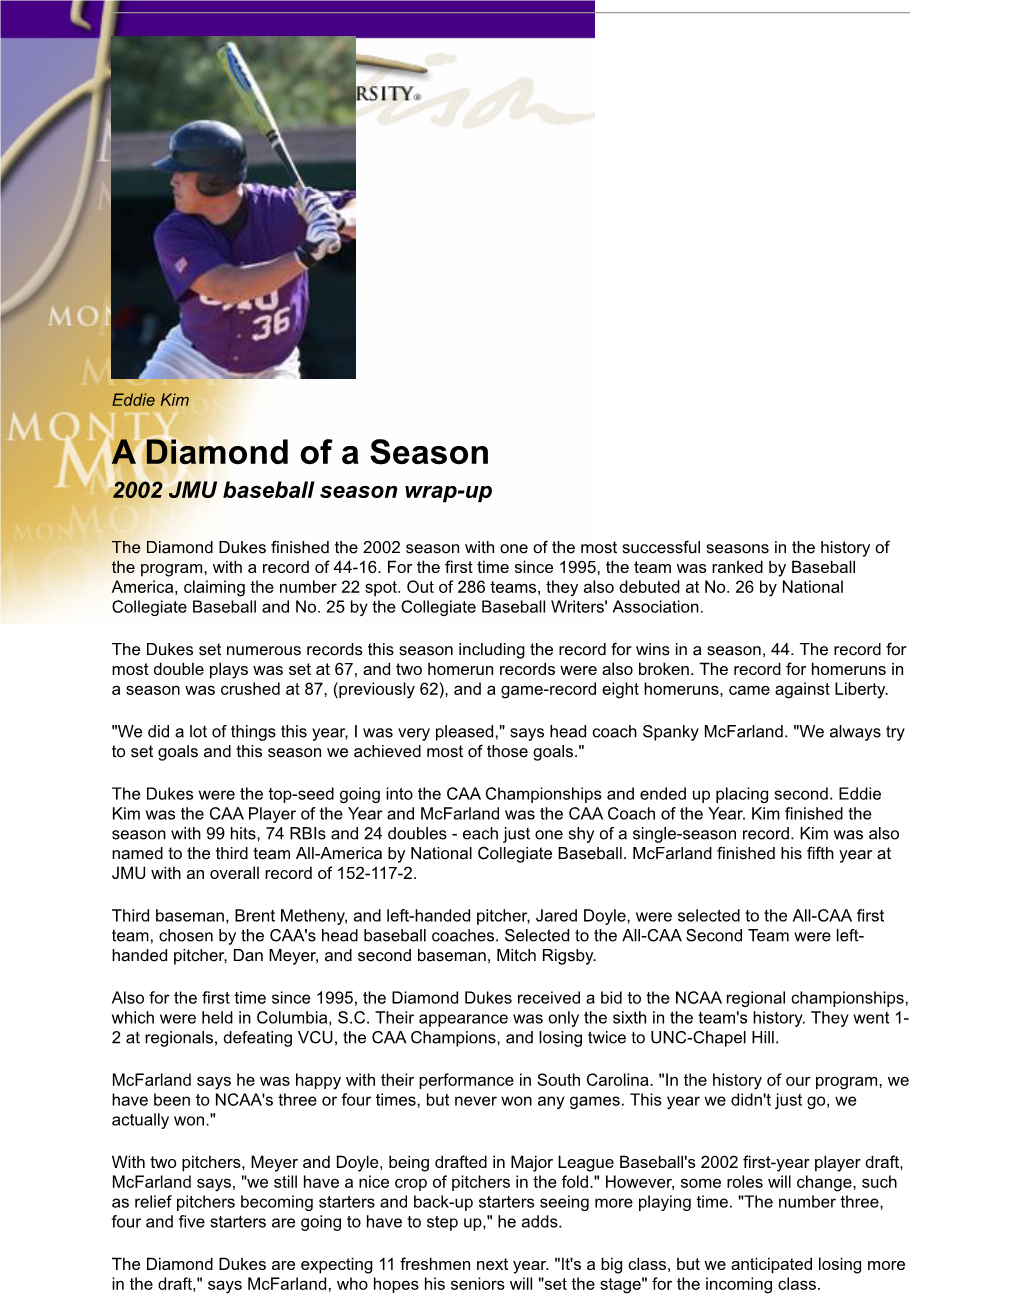 A Diamond of a Season 2002 JMU Baseball Season Wrap-Up